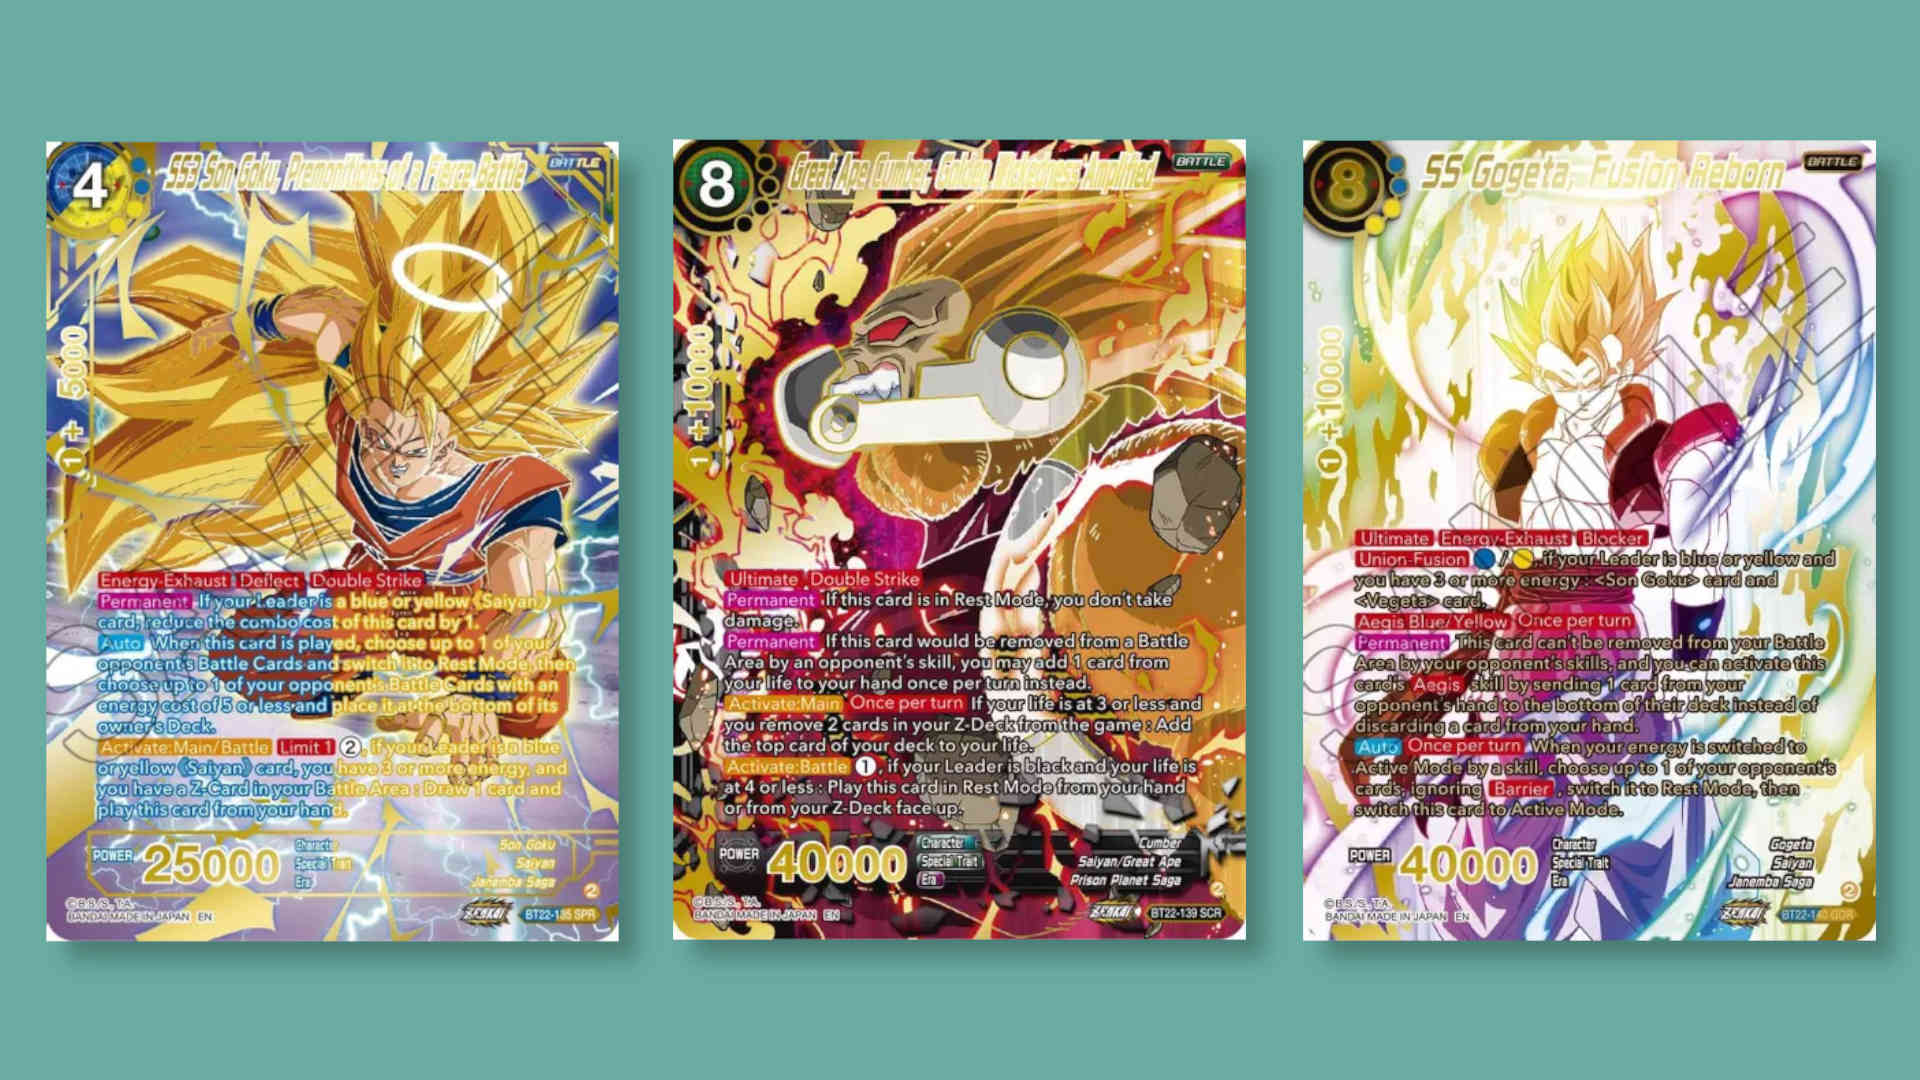 SS3 Son Goku, Premonitions of a Fierce Battle (SPR) - Critical